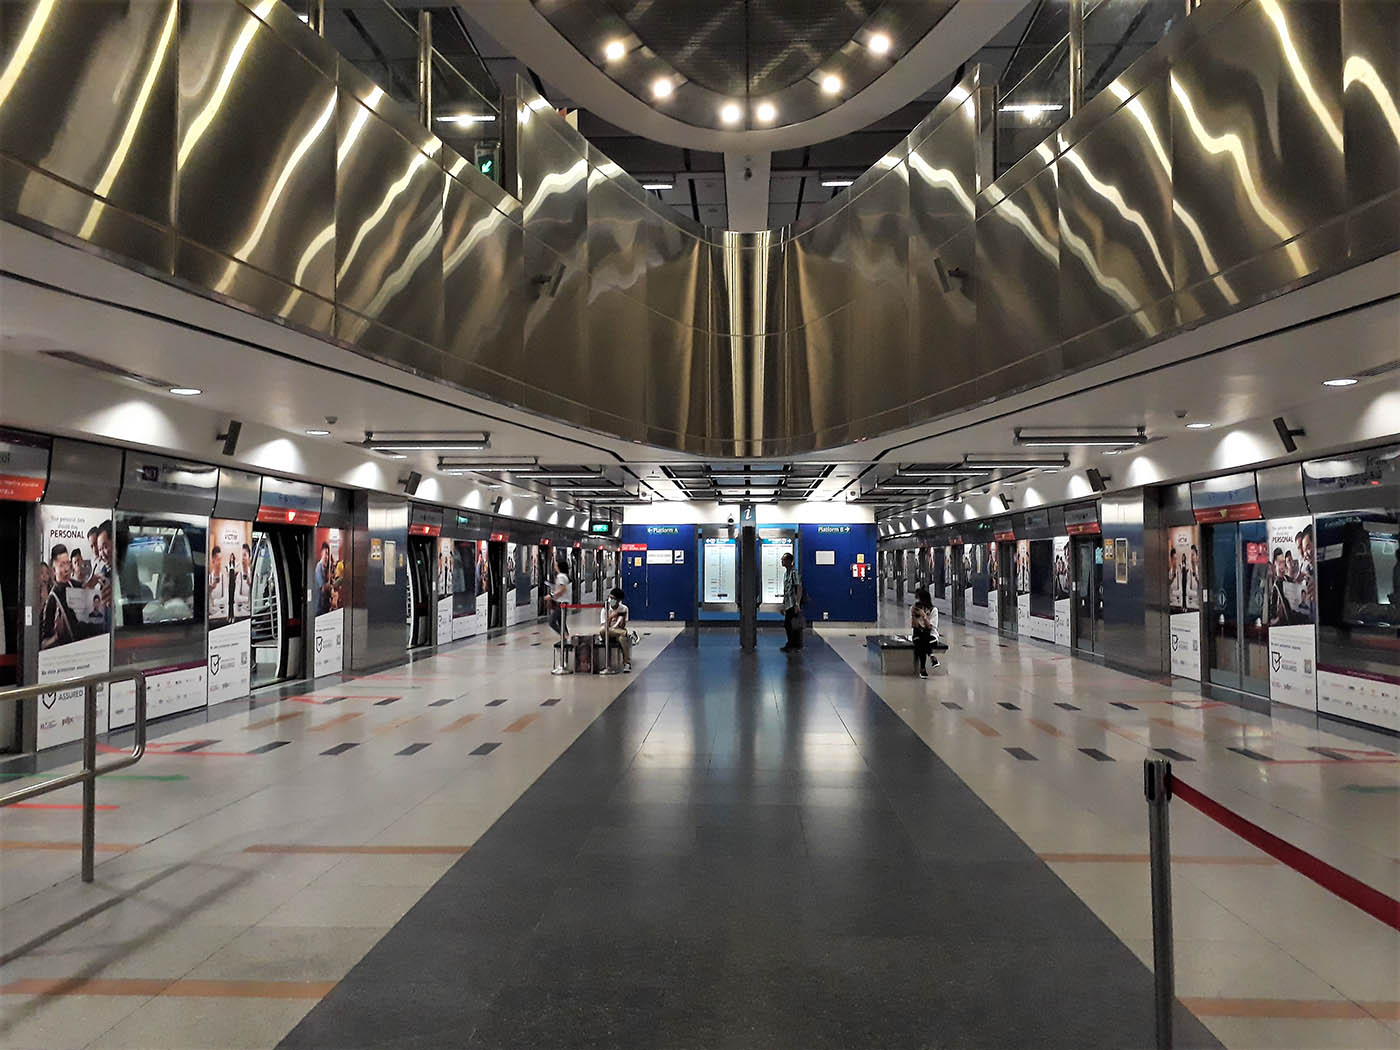 HarbourFront MRT Station - - North East Line Platform